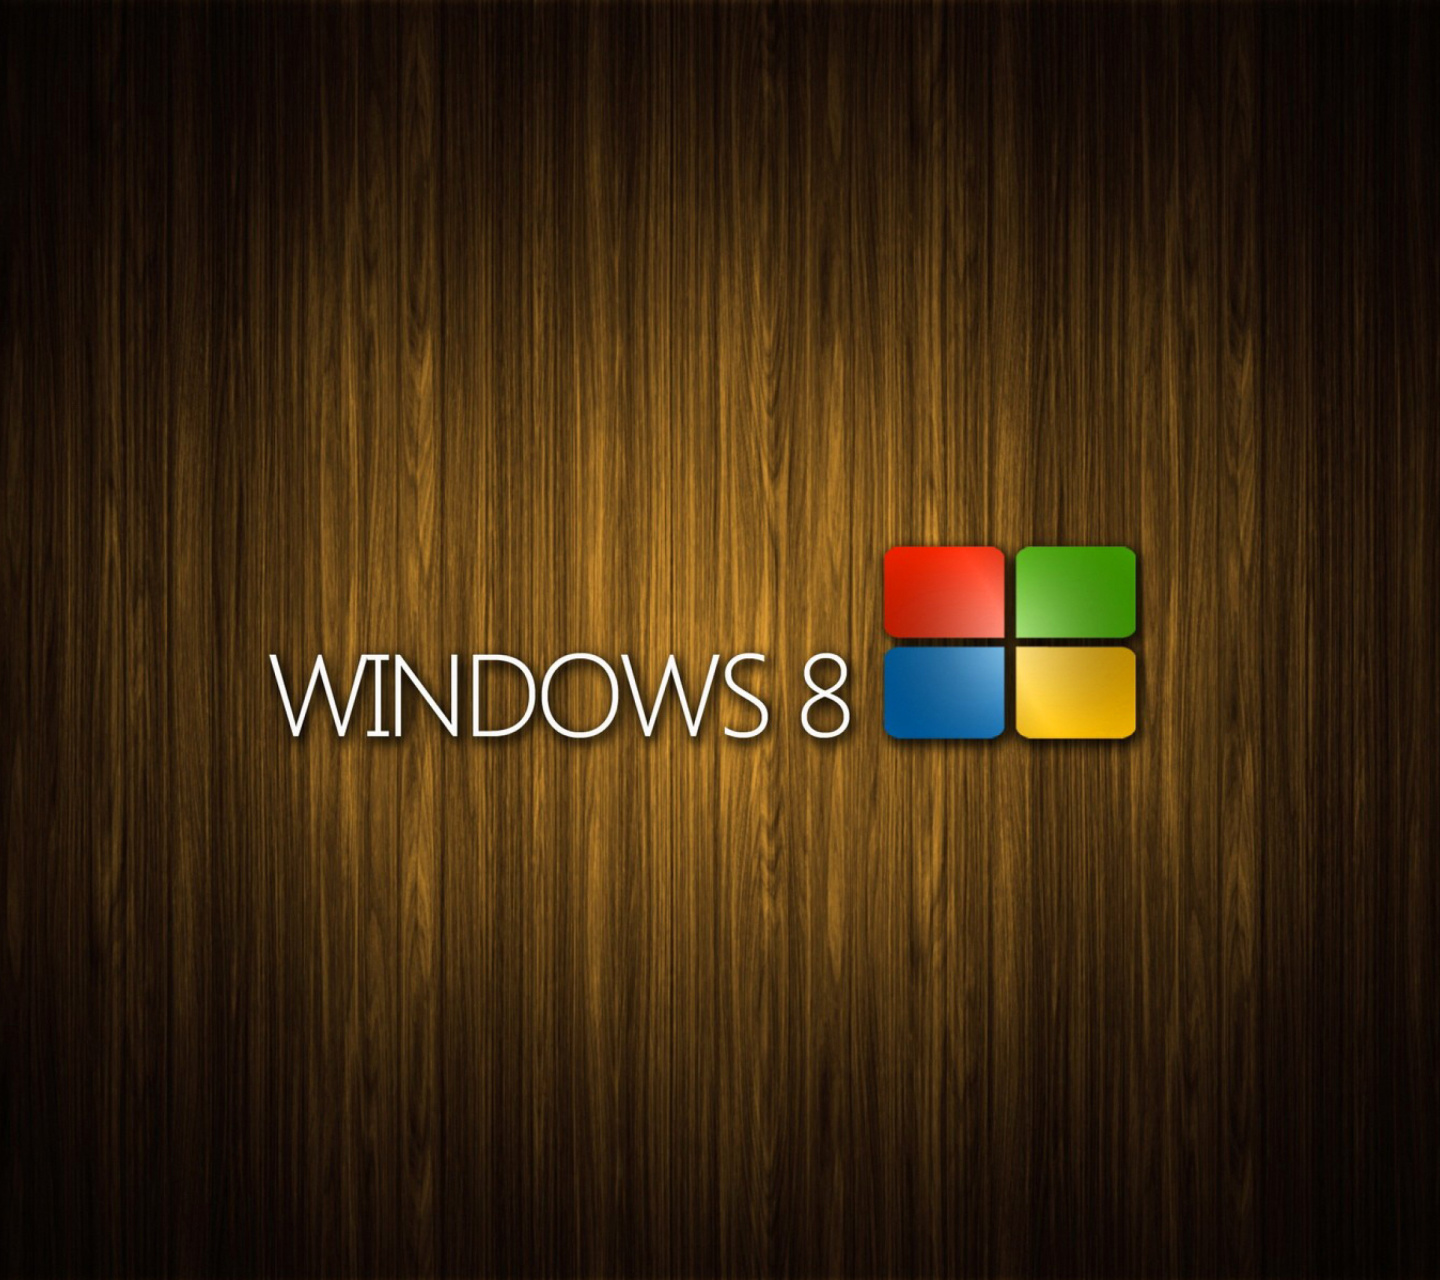 Windows 8 Wooden Emblem wallpaper 1440x1280